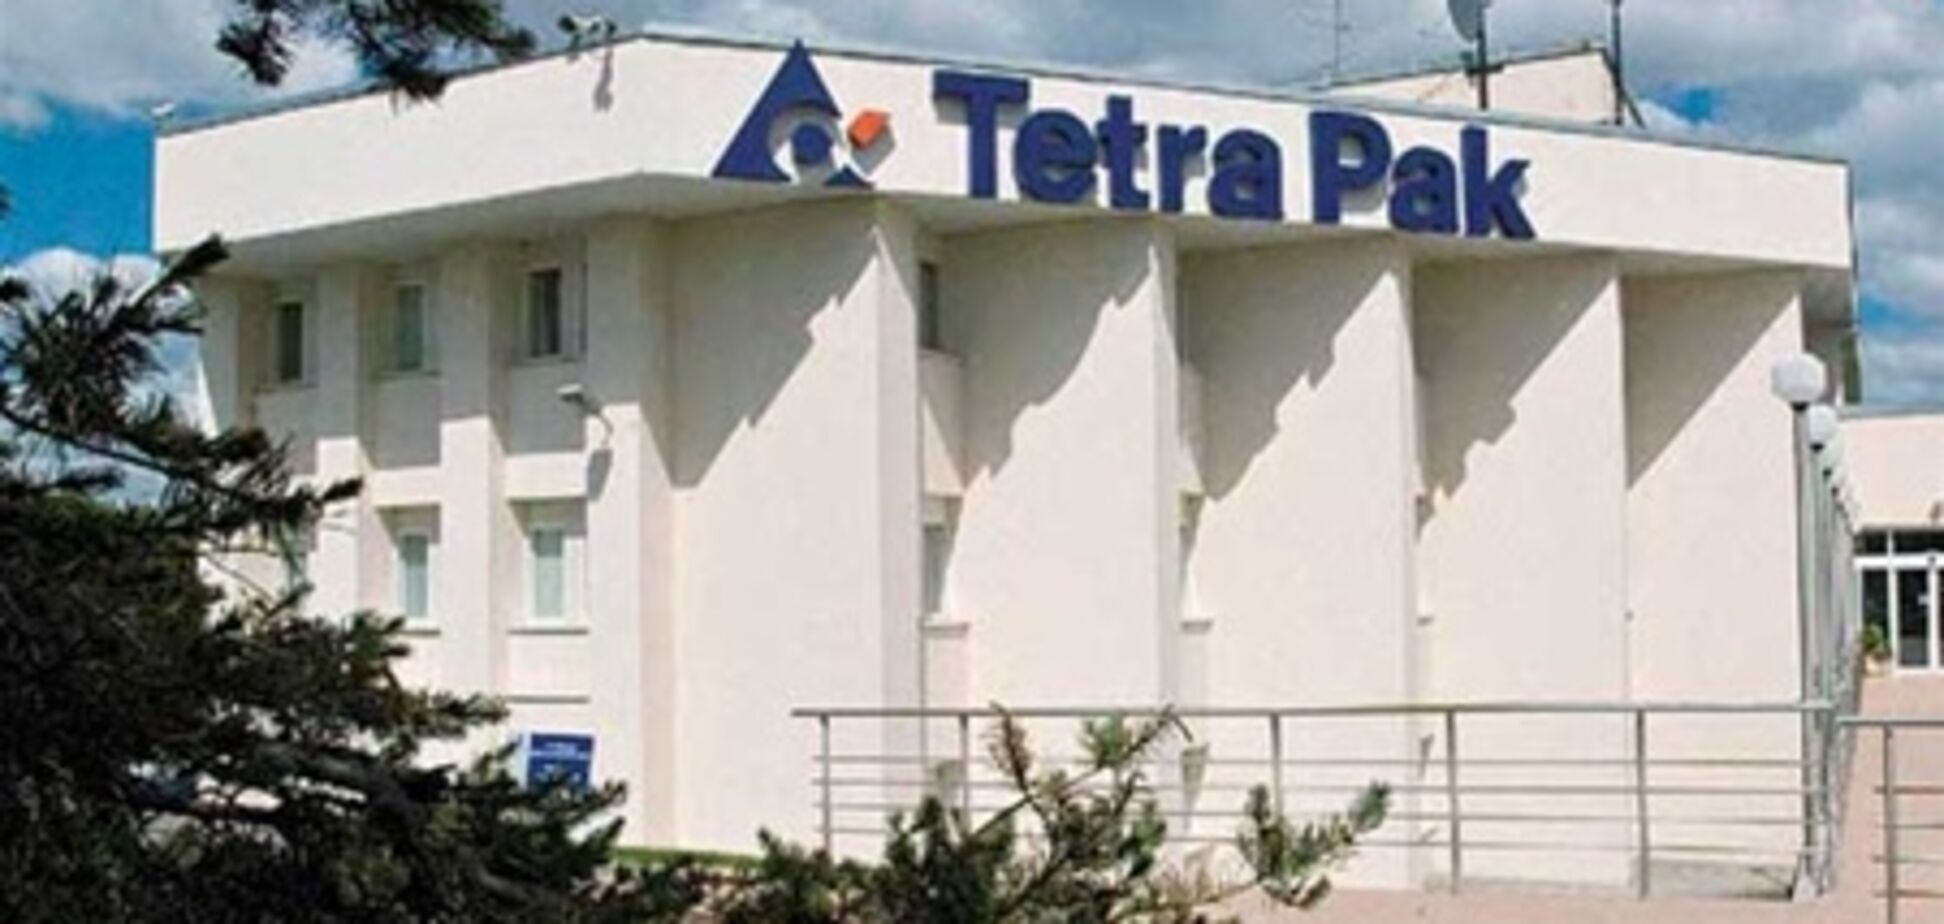 'Тетра Пак' купила активы бразильской компании